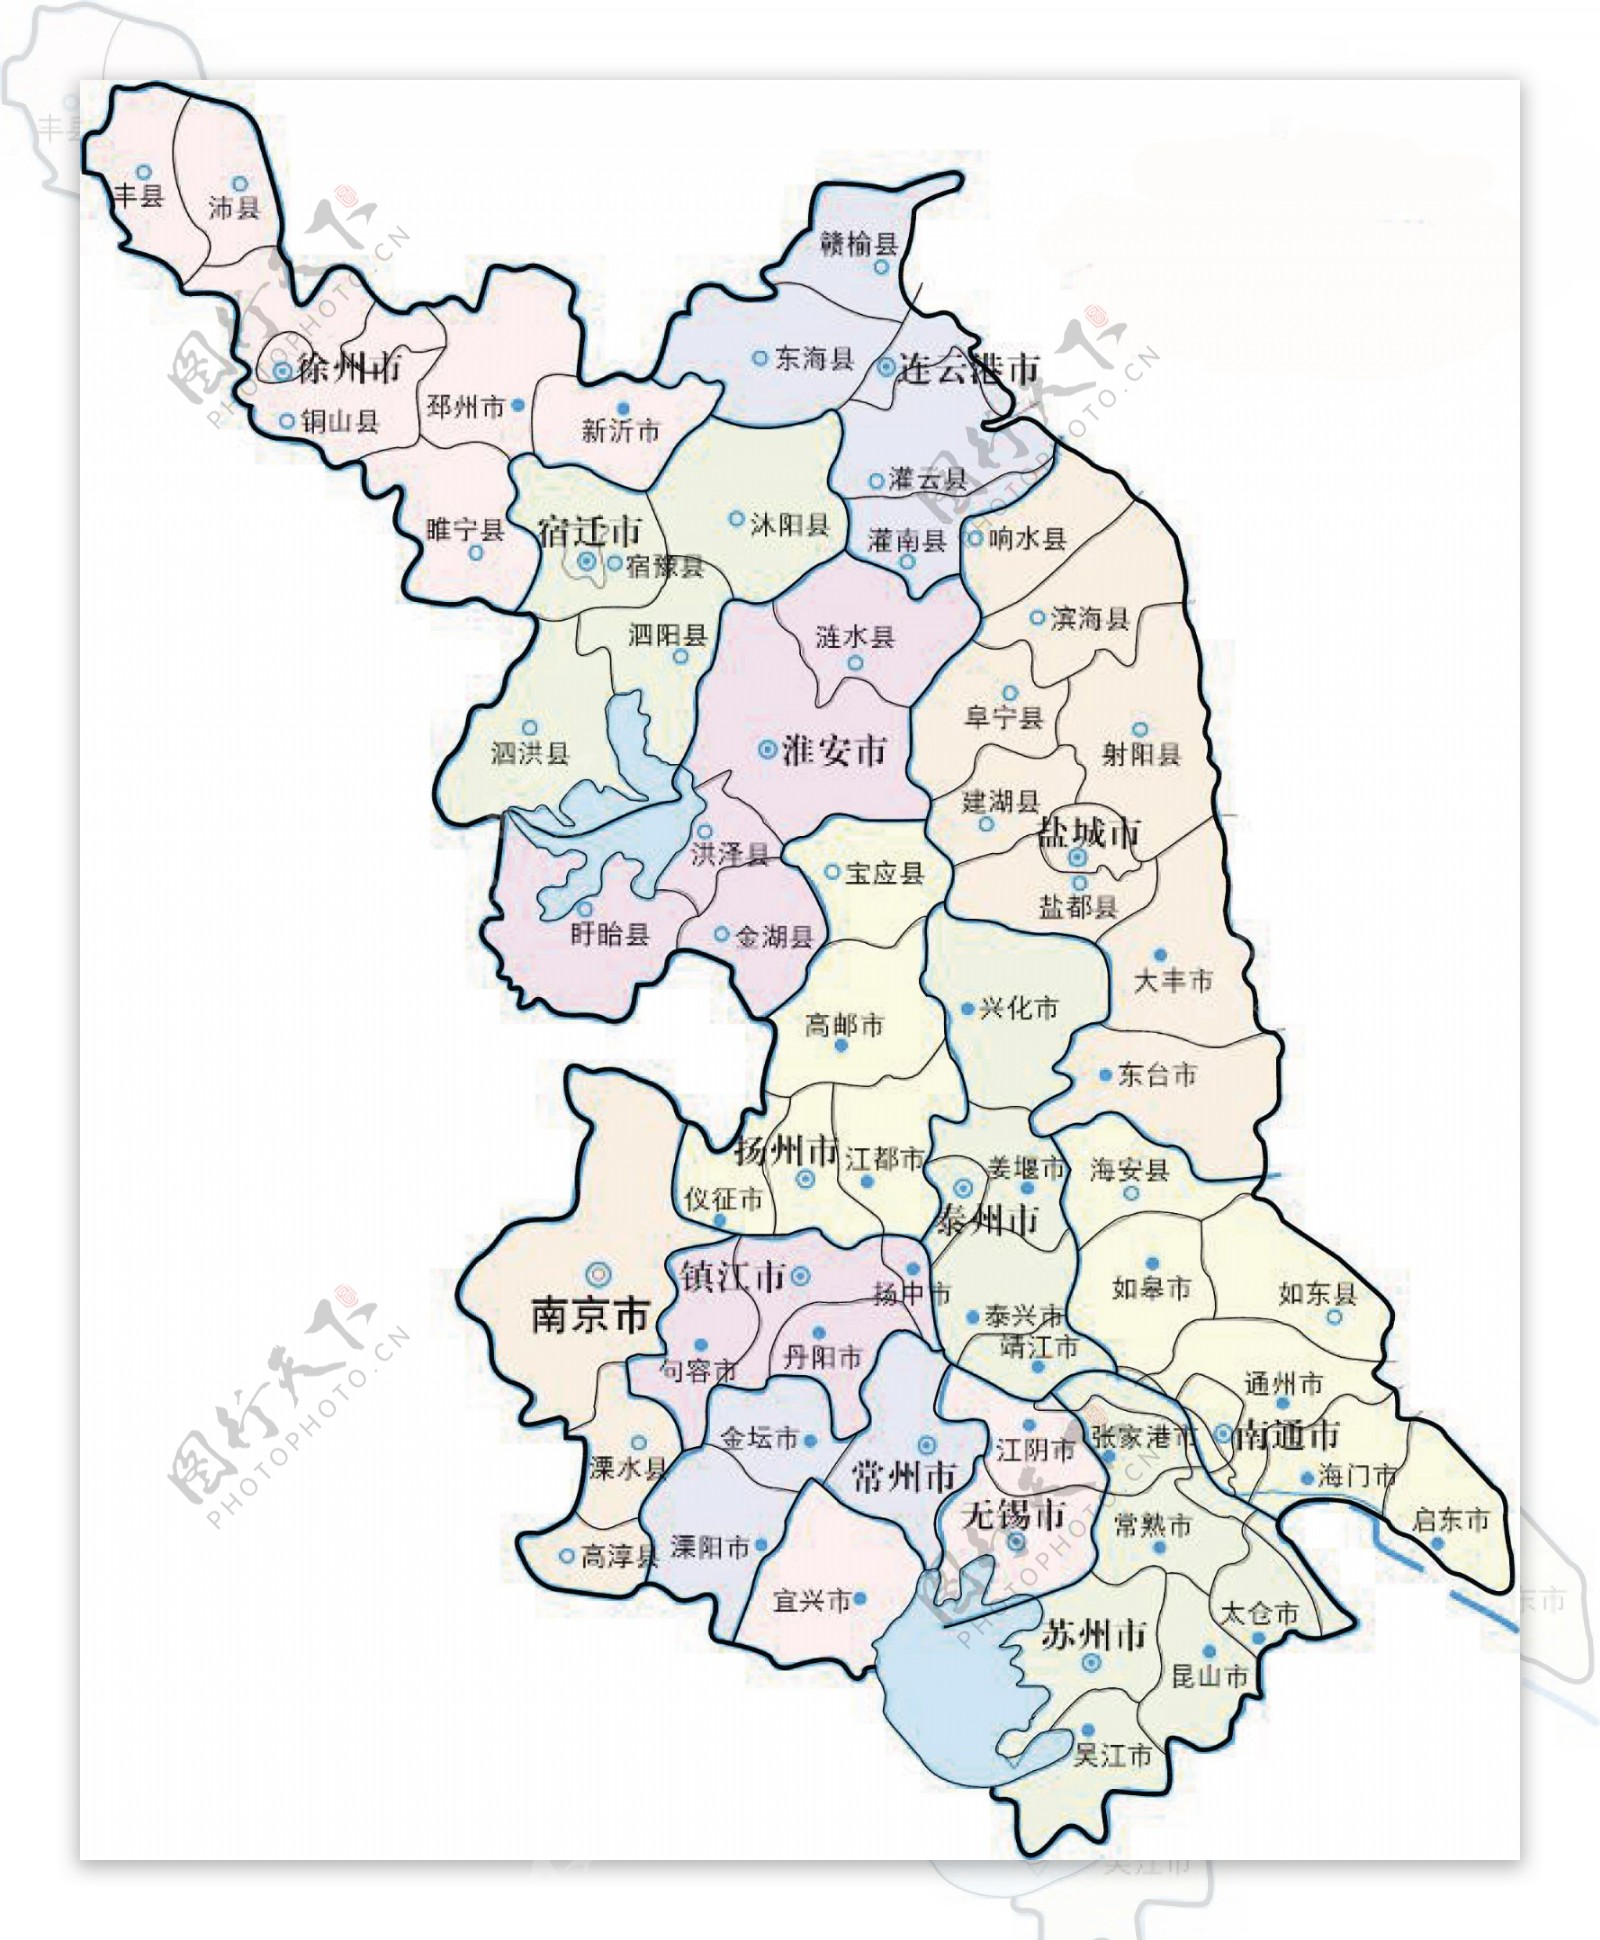 江苏省地区分布地图矢量素材